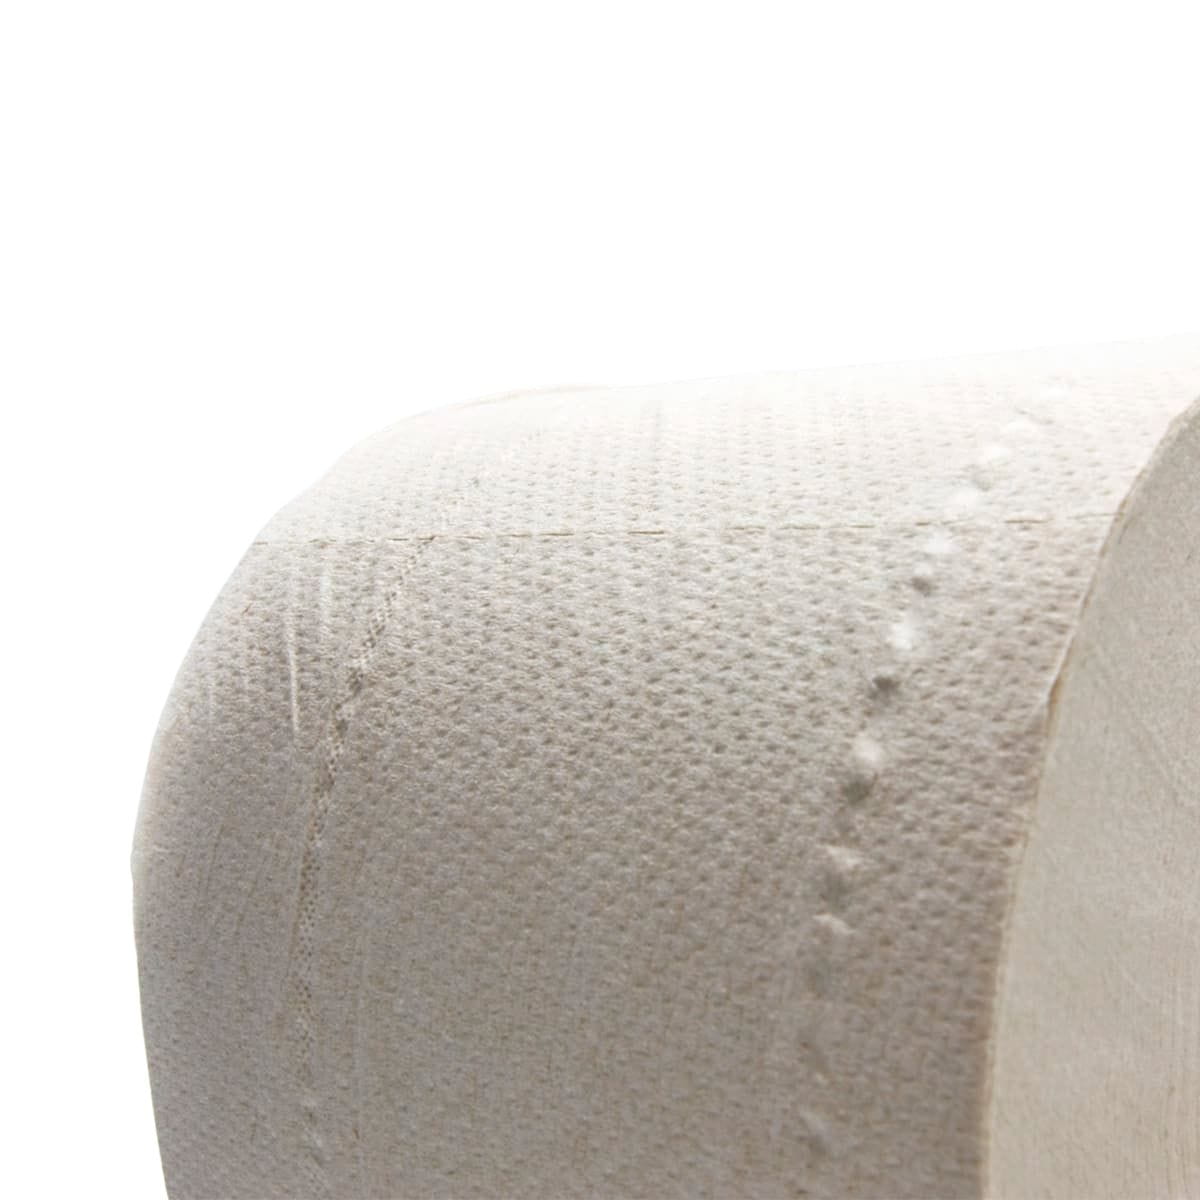 Textura del papel higiénico sin blanquear 100% reciclado a granel